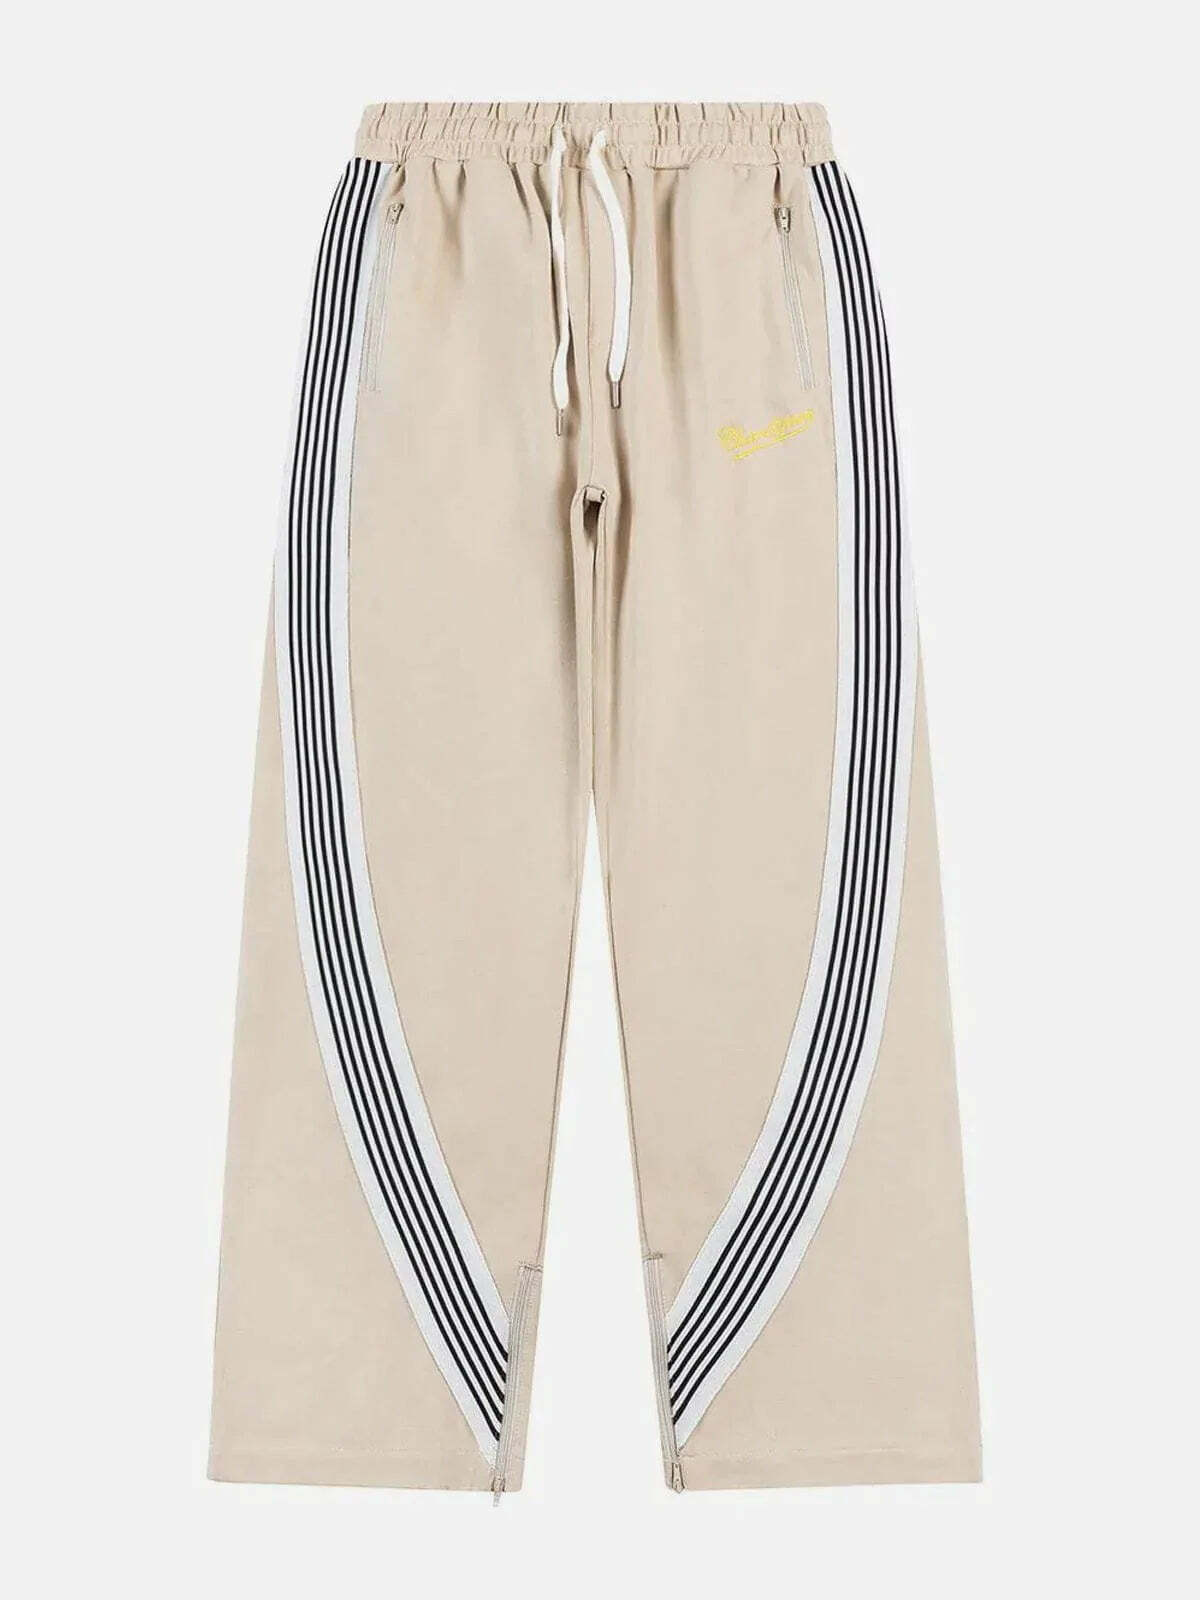 dynamic stripe panel long pants 1690